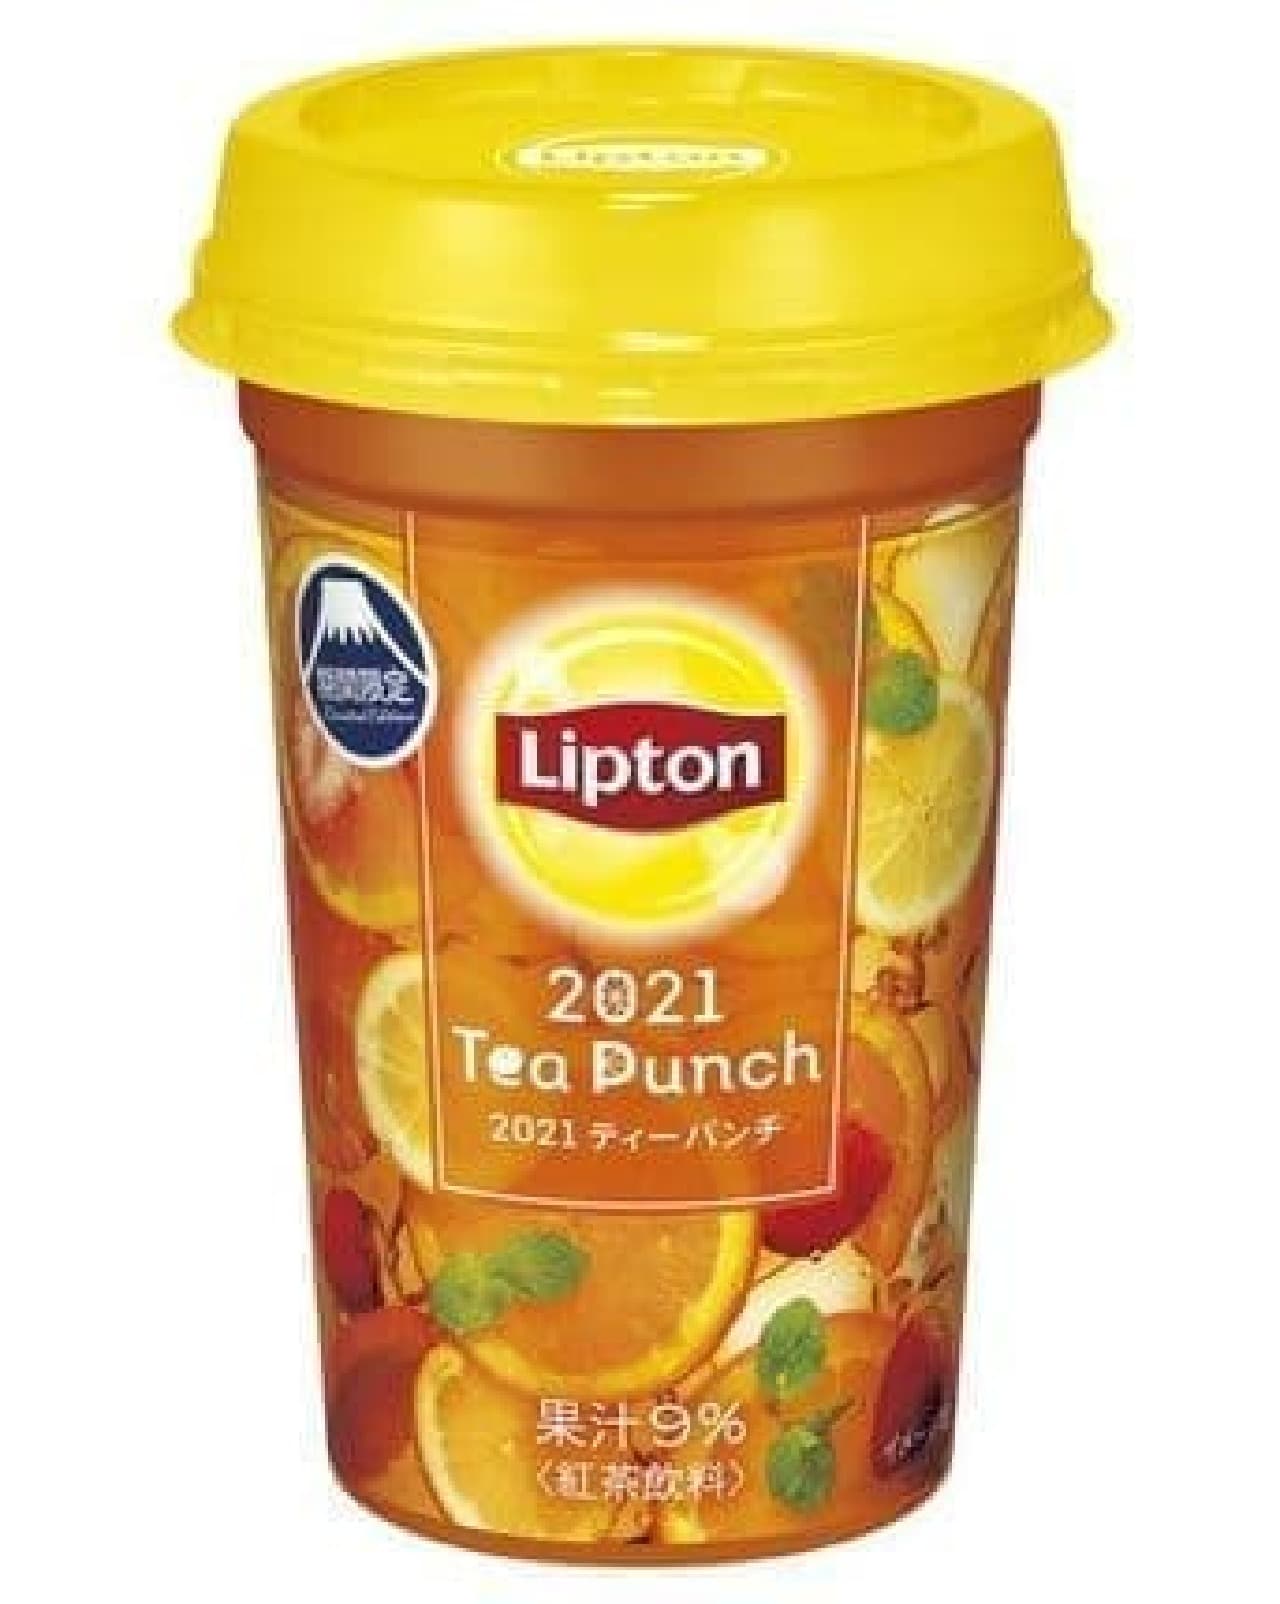 Lipton 2021 Tea Punch